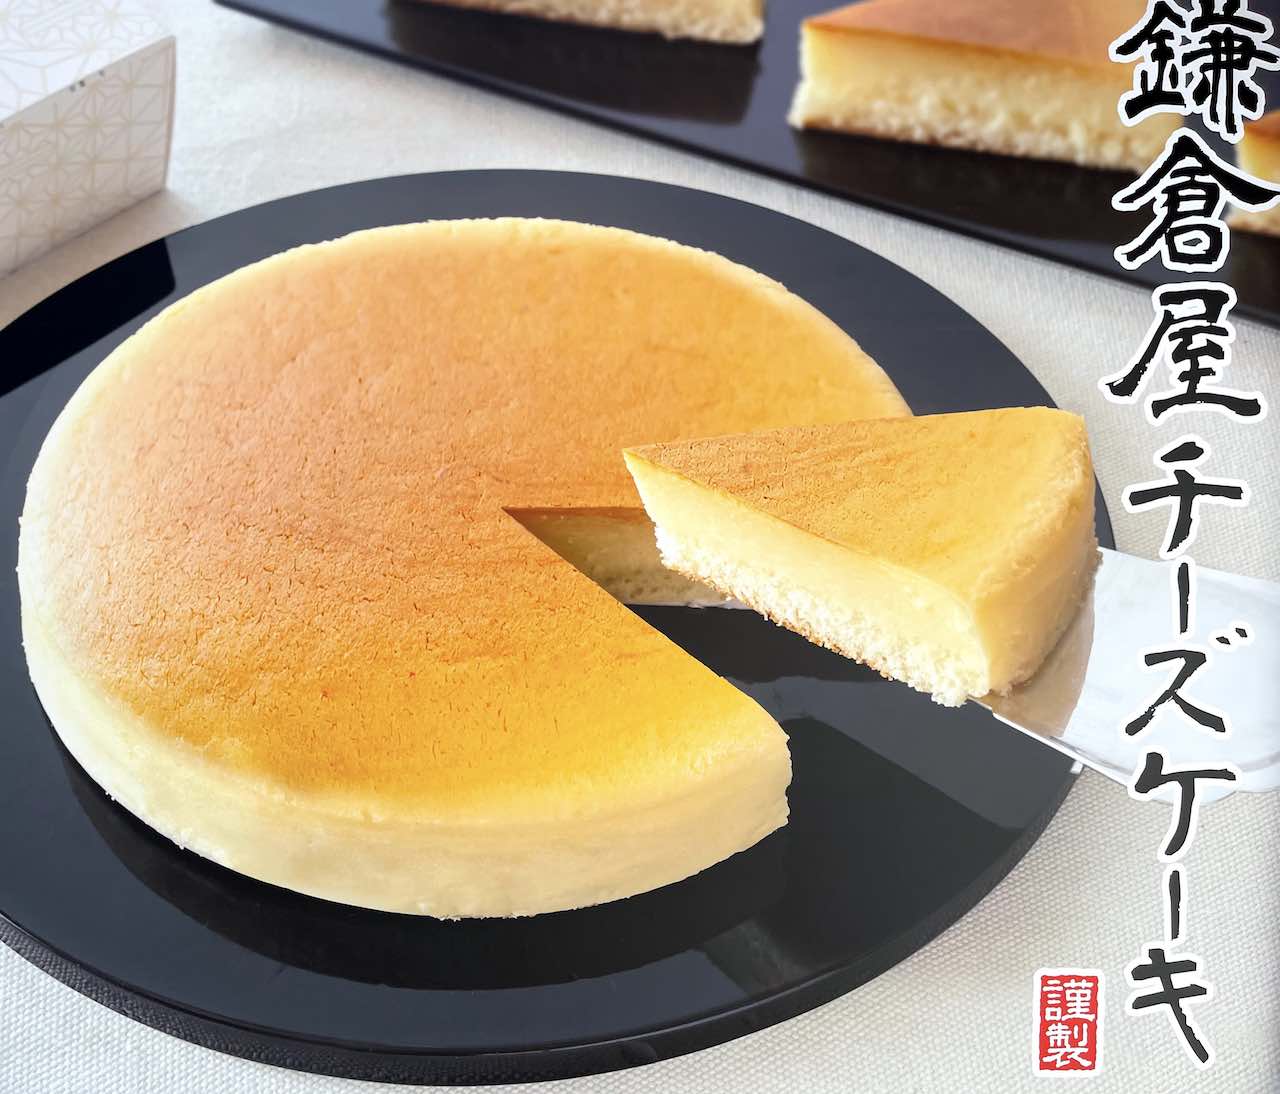 鎌倉市 鎌倉屋 のチーズケーキはふんわりとしっとり その秘密がわかりました 号外net 鎌倉市 逗子市 葉山町